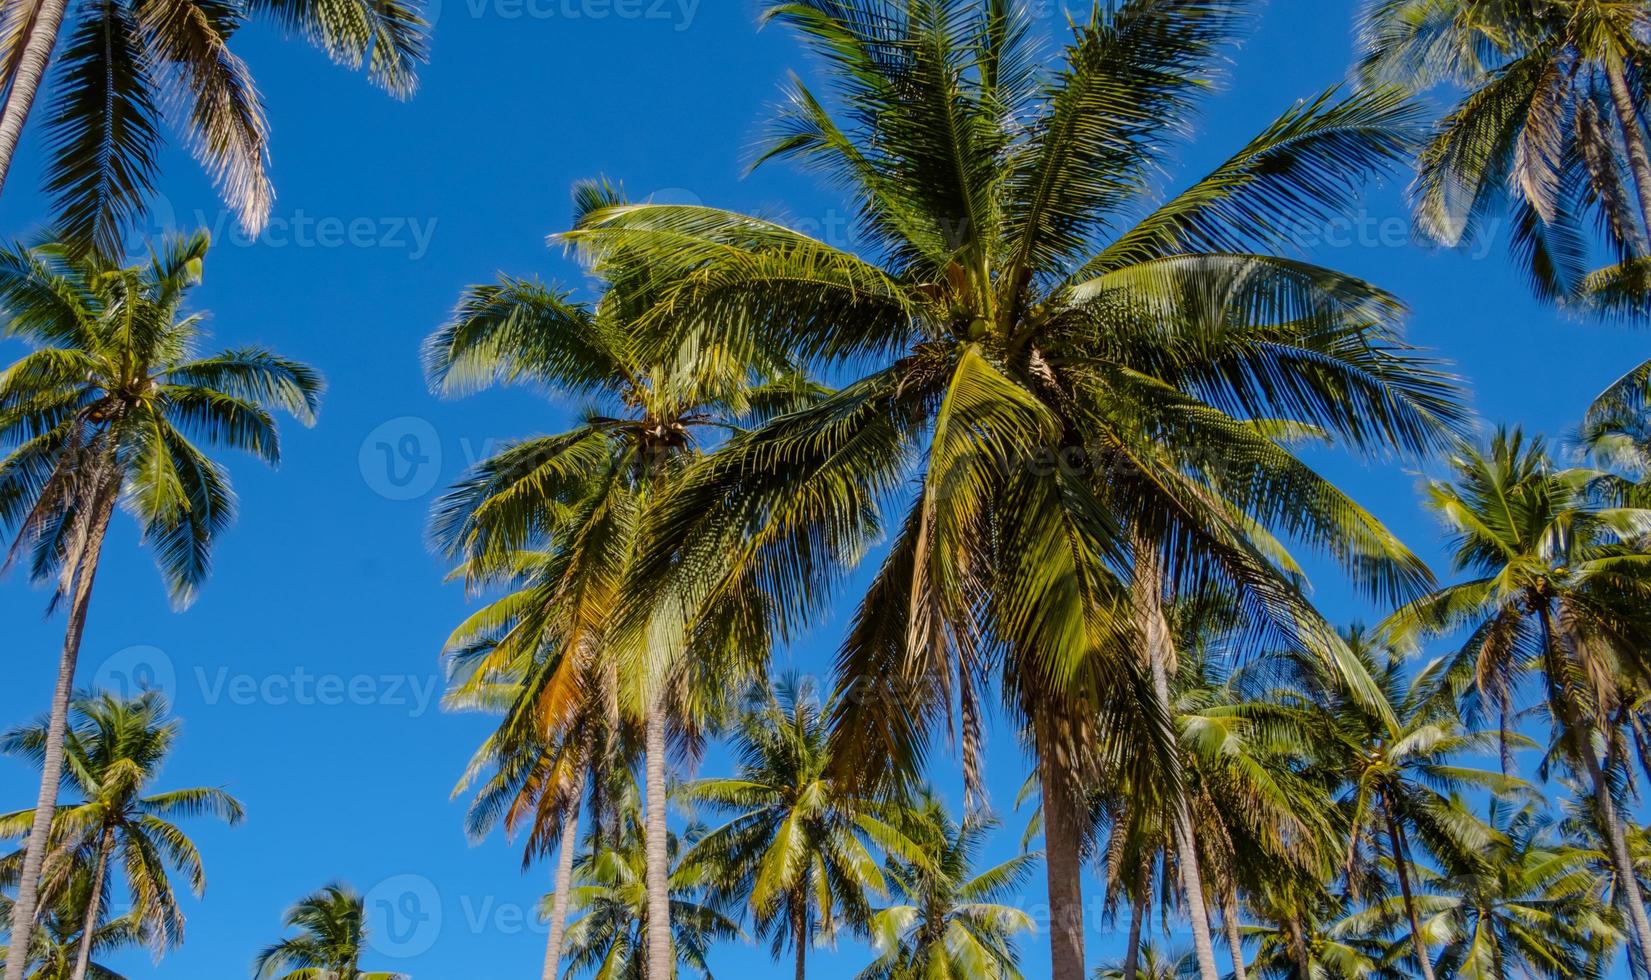 hermoso bosque de palmeras junto al mar tropical día de sol fondo de cielo despejado, concepto de viajes y vacaciones fondo de verano. foto